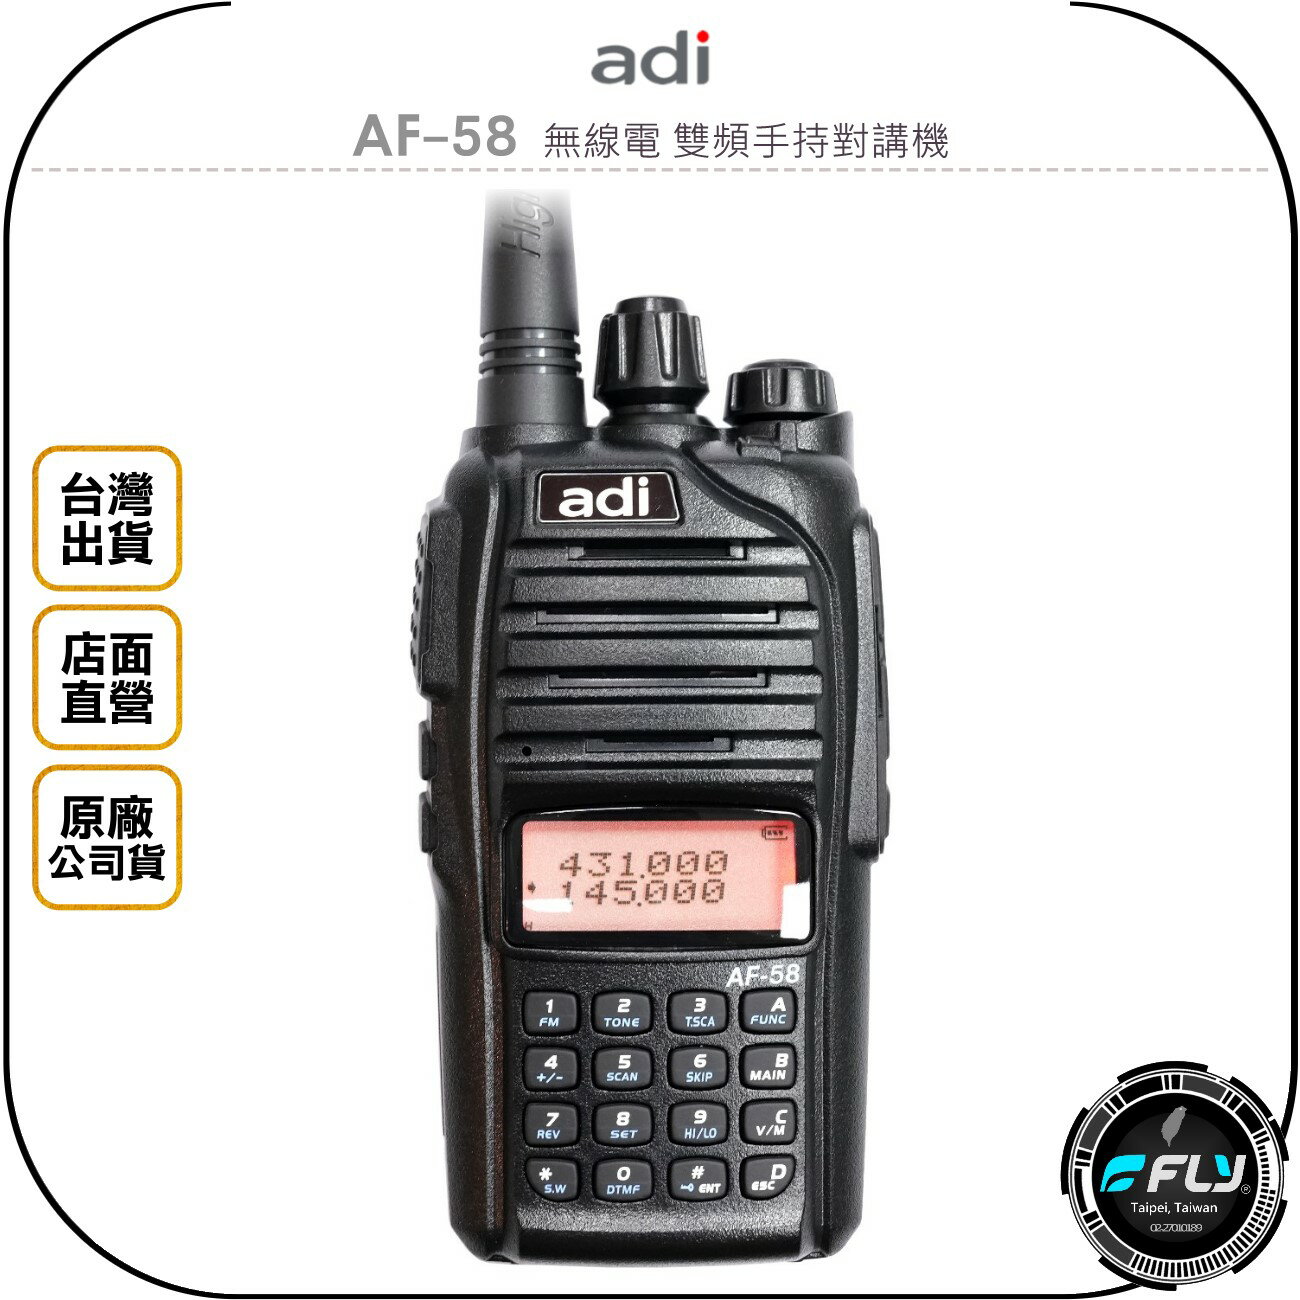 《飛翔無線3C》ADI AF-58 無線電 雙頻手持對講機◉公司貨◉收音機◉雙頻雙顯◉活動通信◉跟車聯繫◉登山露營